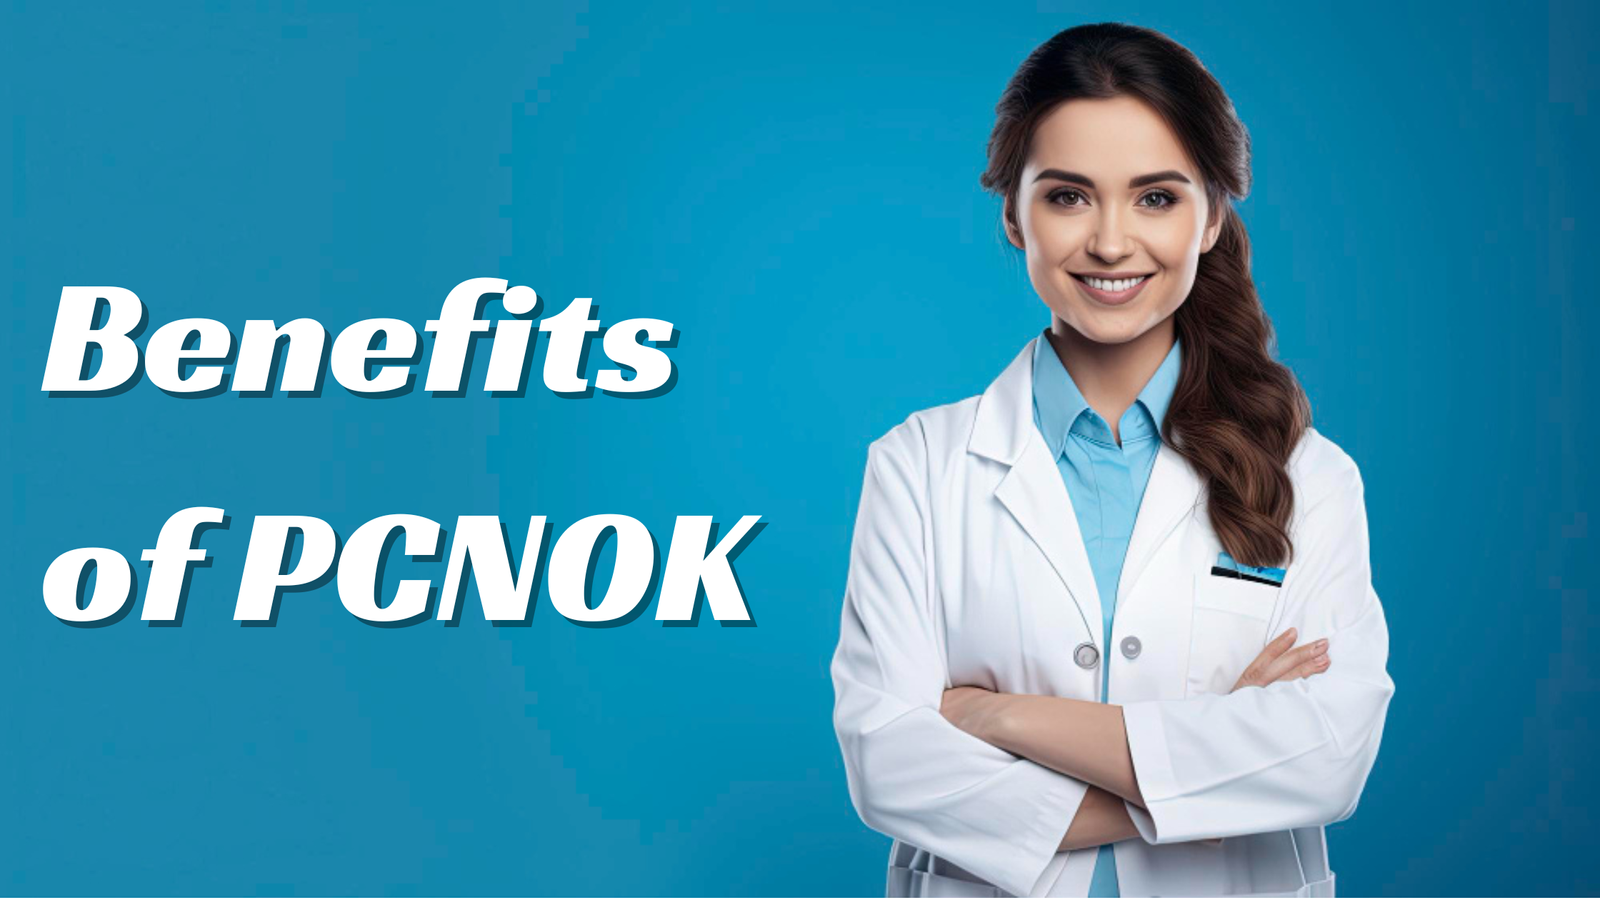 Benefits of PCNOK